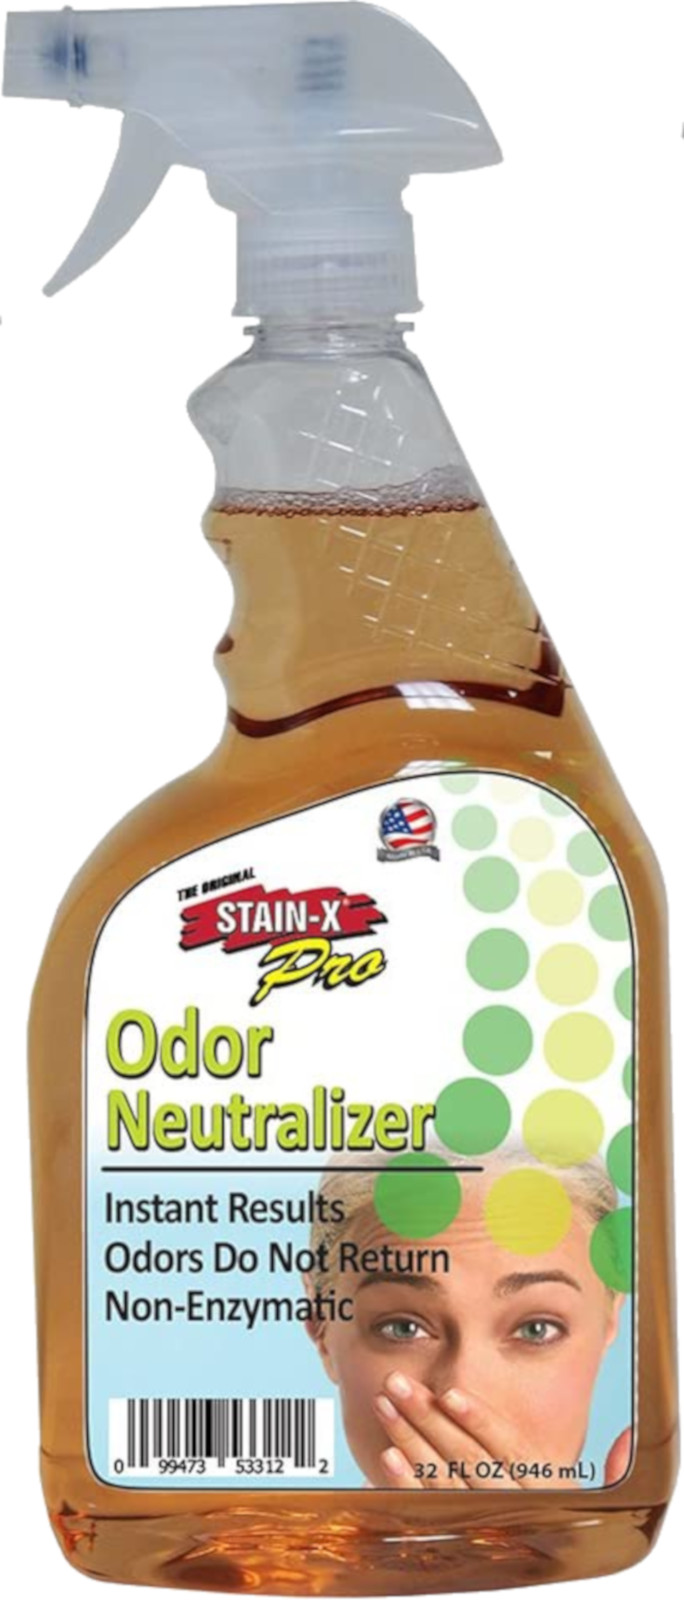 Stain-X Pro  Odor Neutralizer  32 FL OZ